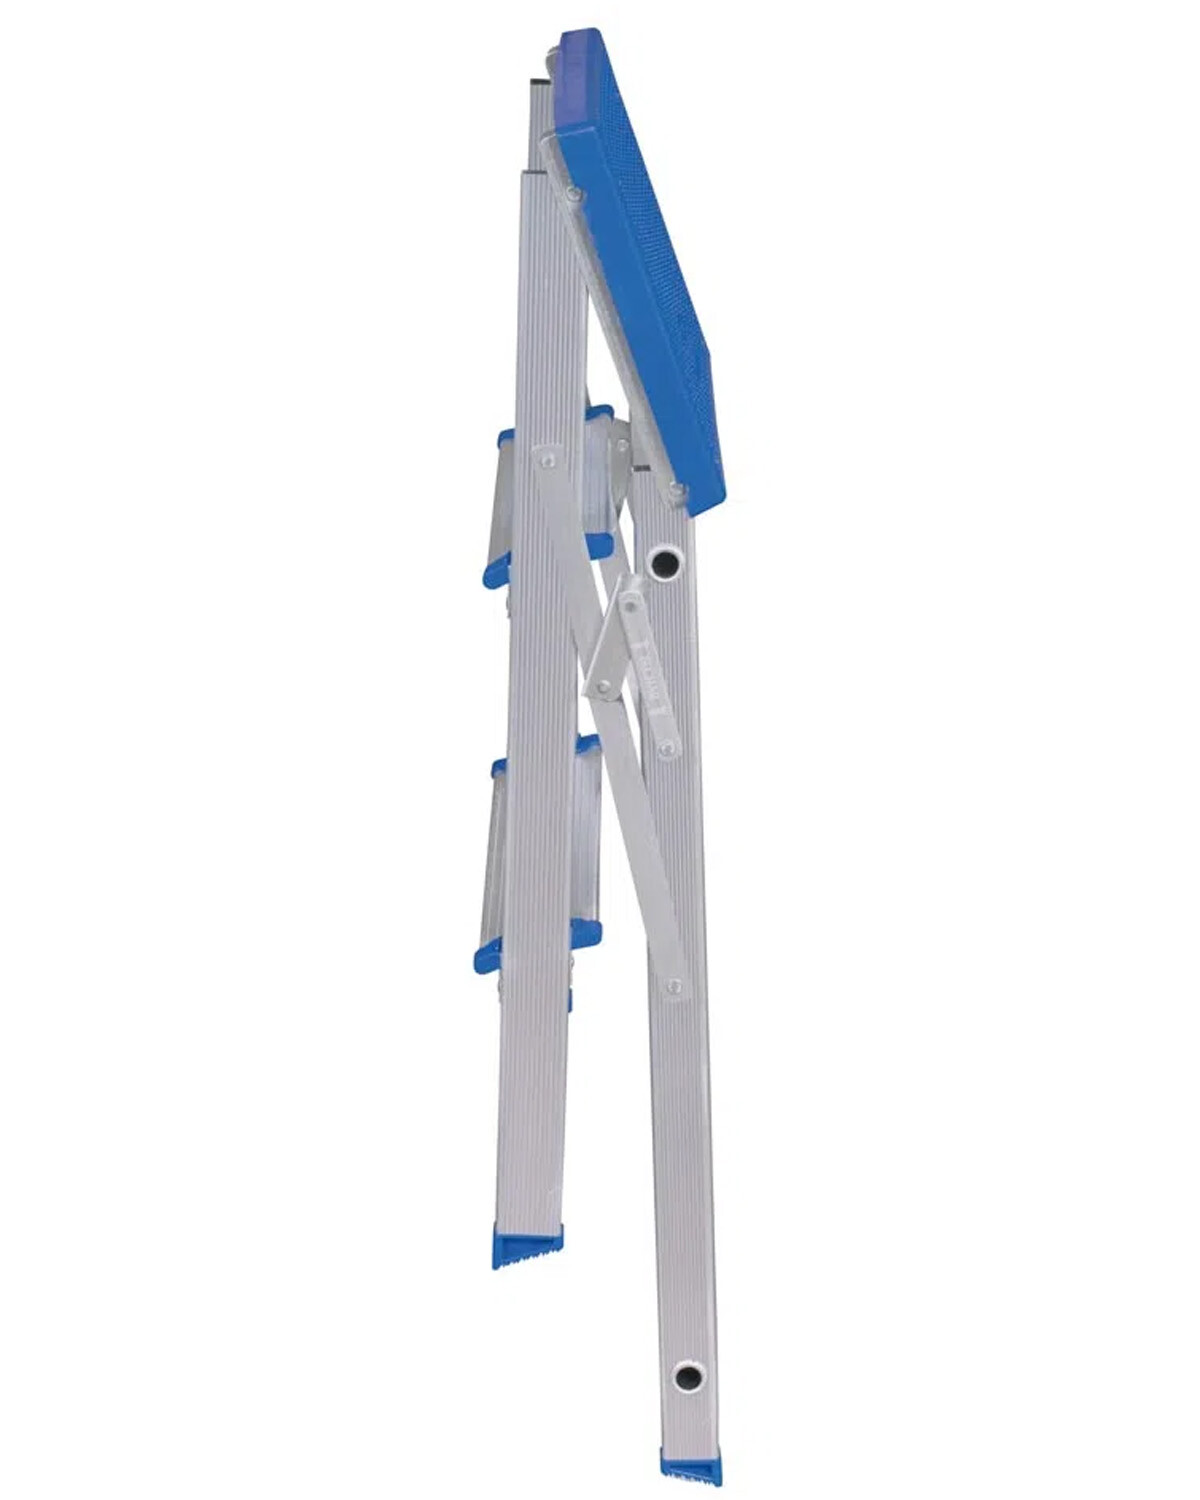 Escalera de aluminio plegable 3 escalones – Domino Deco